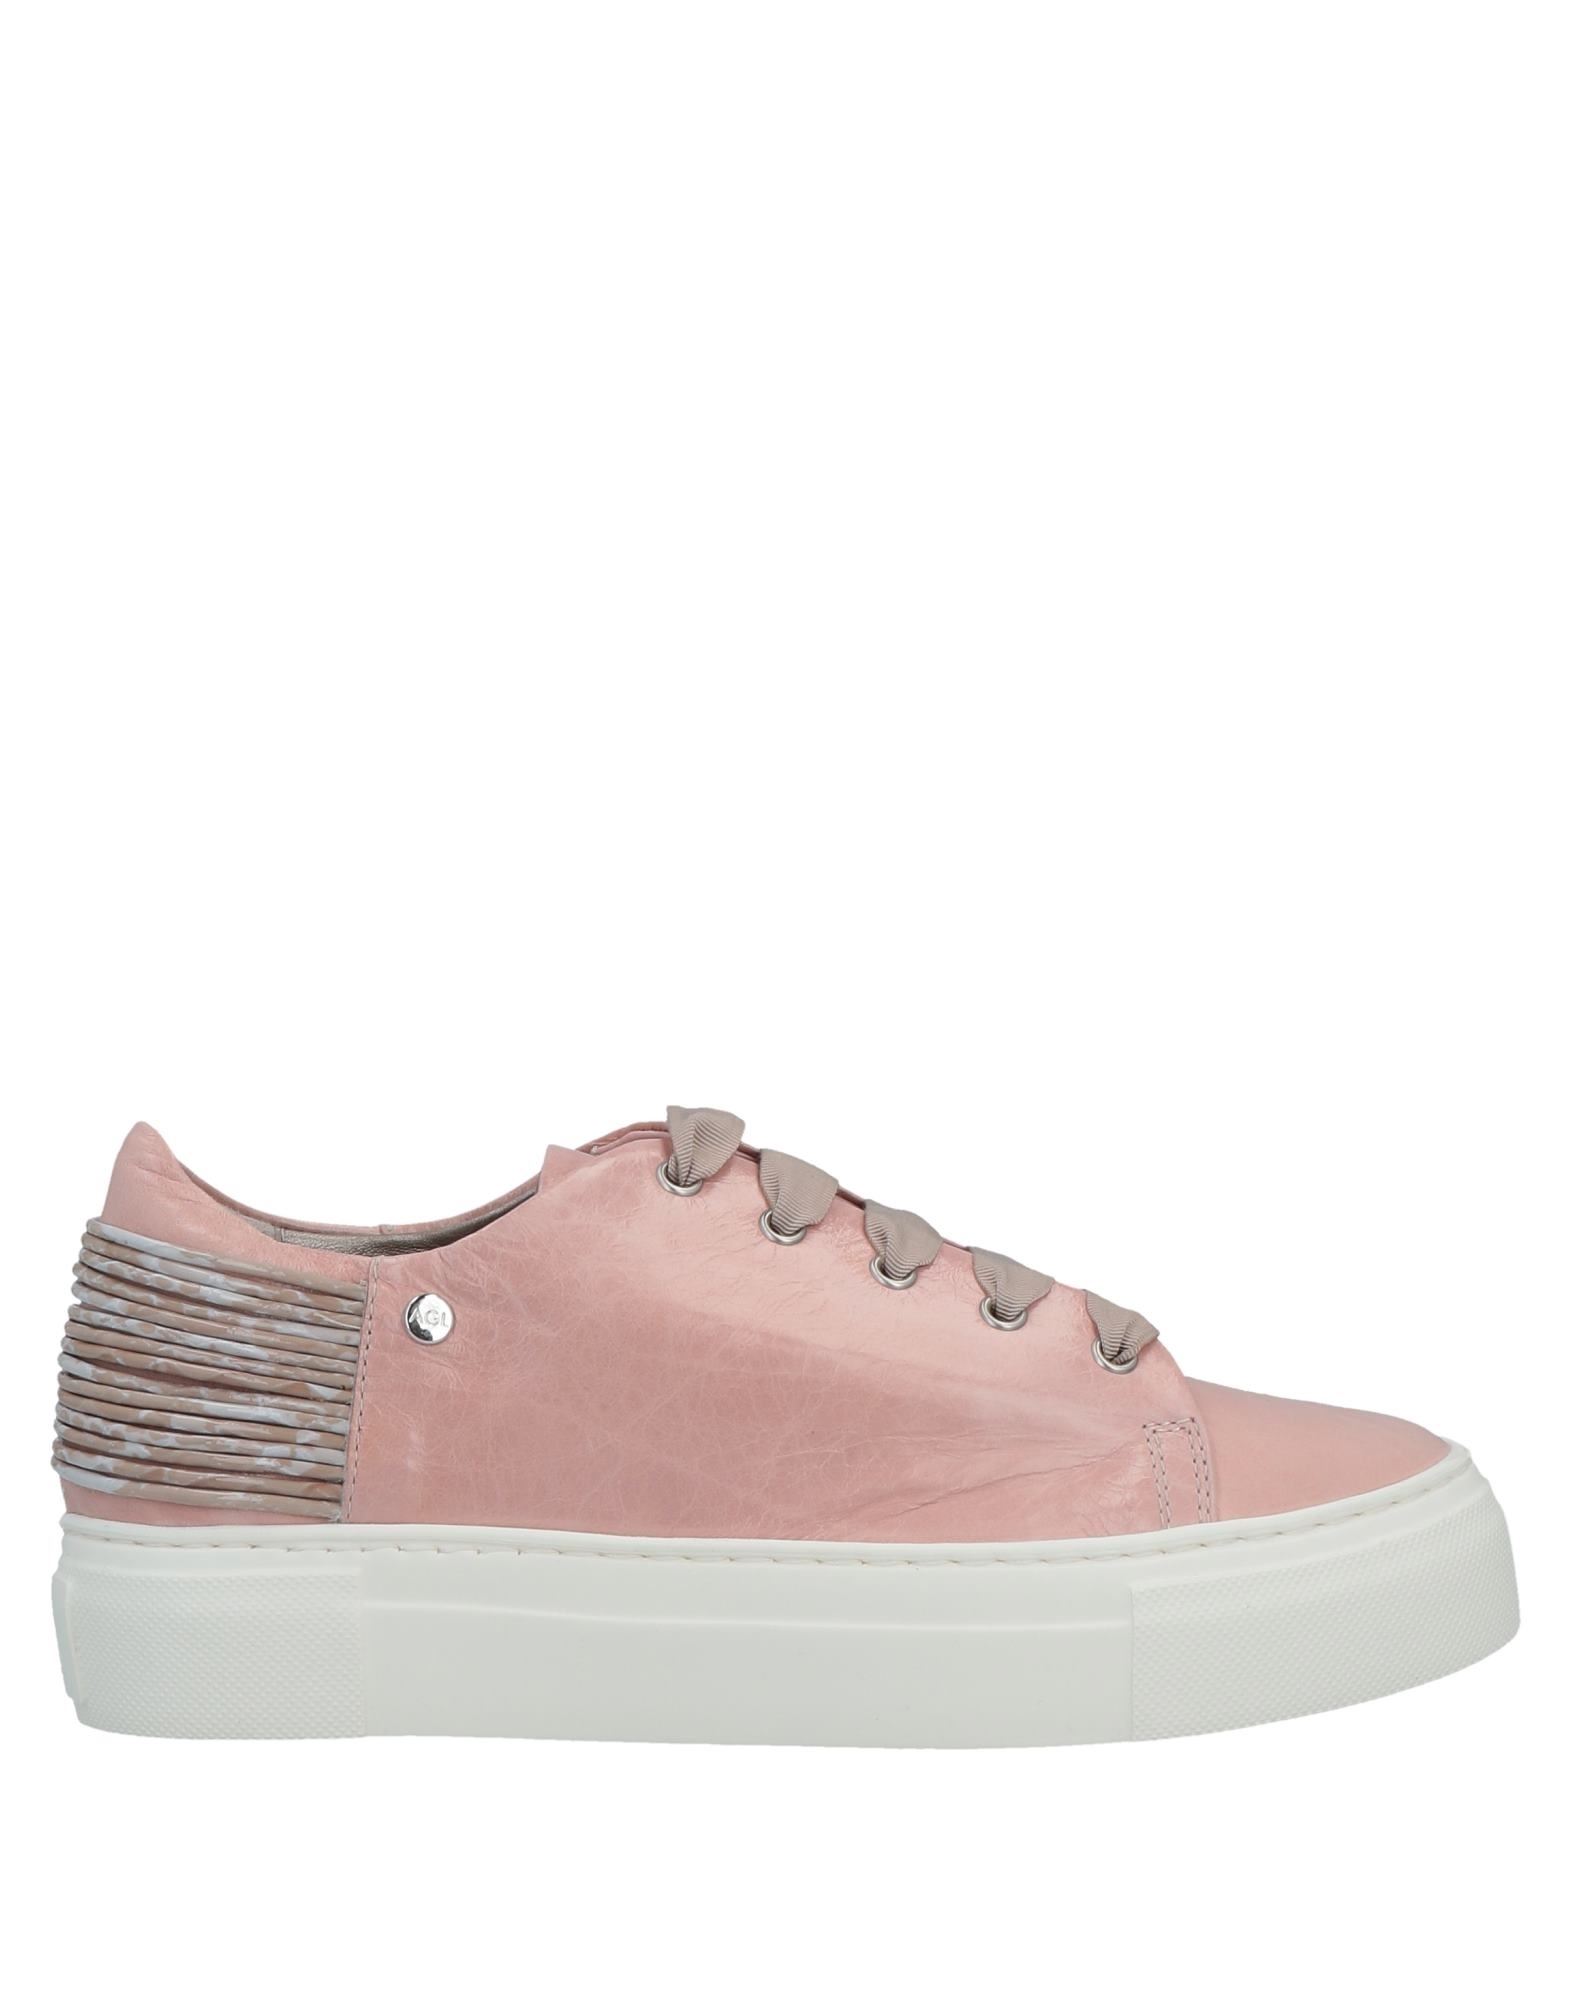 Agl Attilio Giusti Leombruni Sneakers In Pink